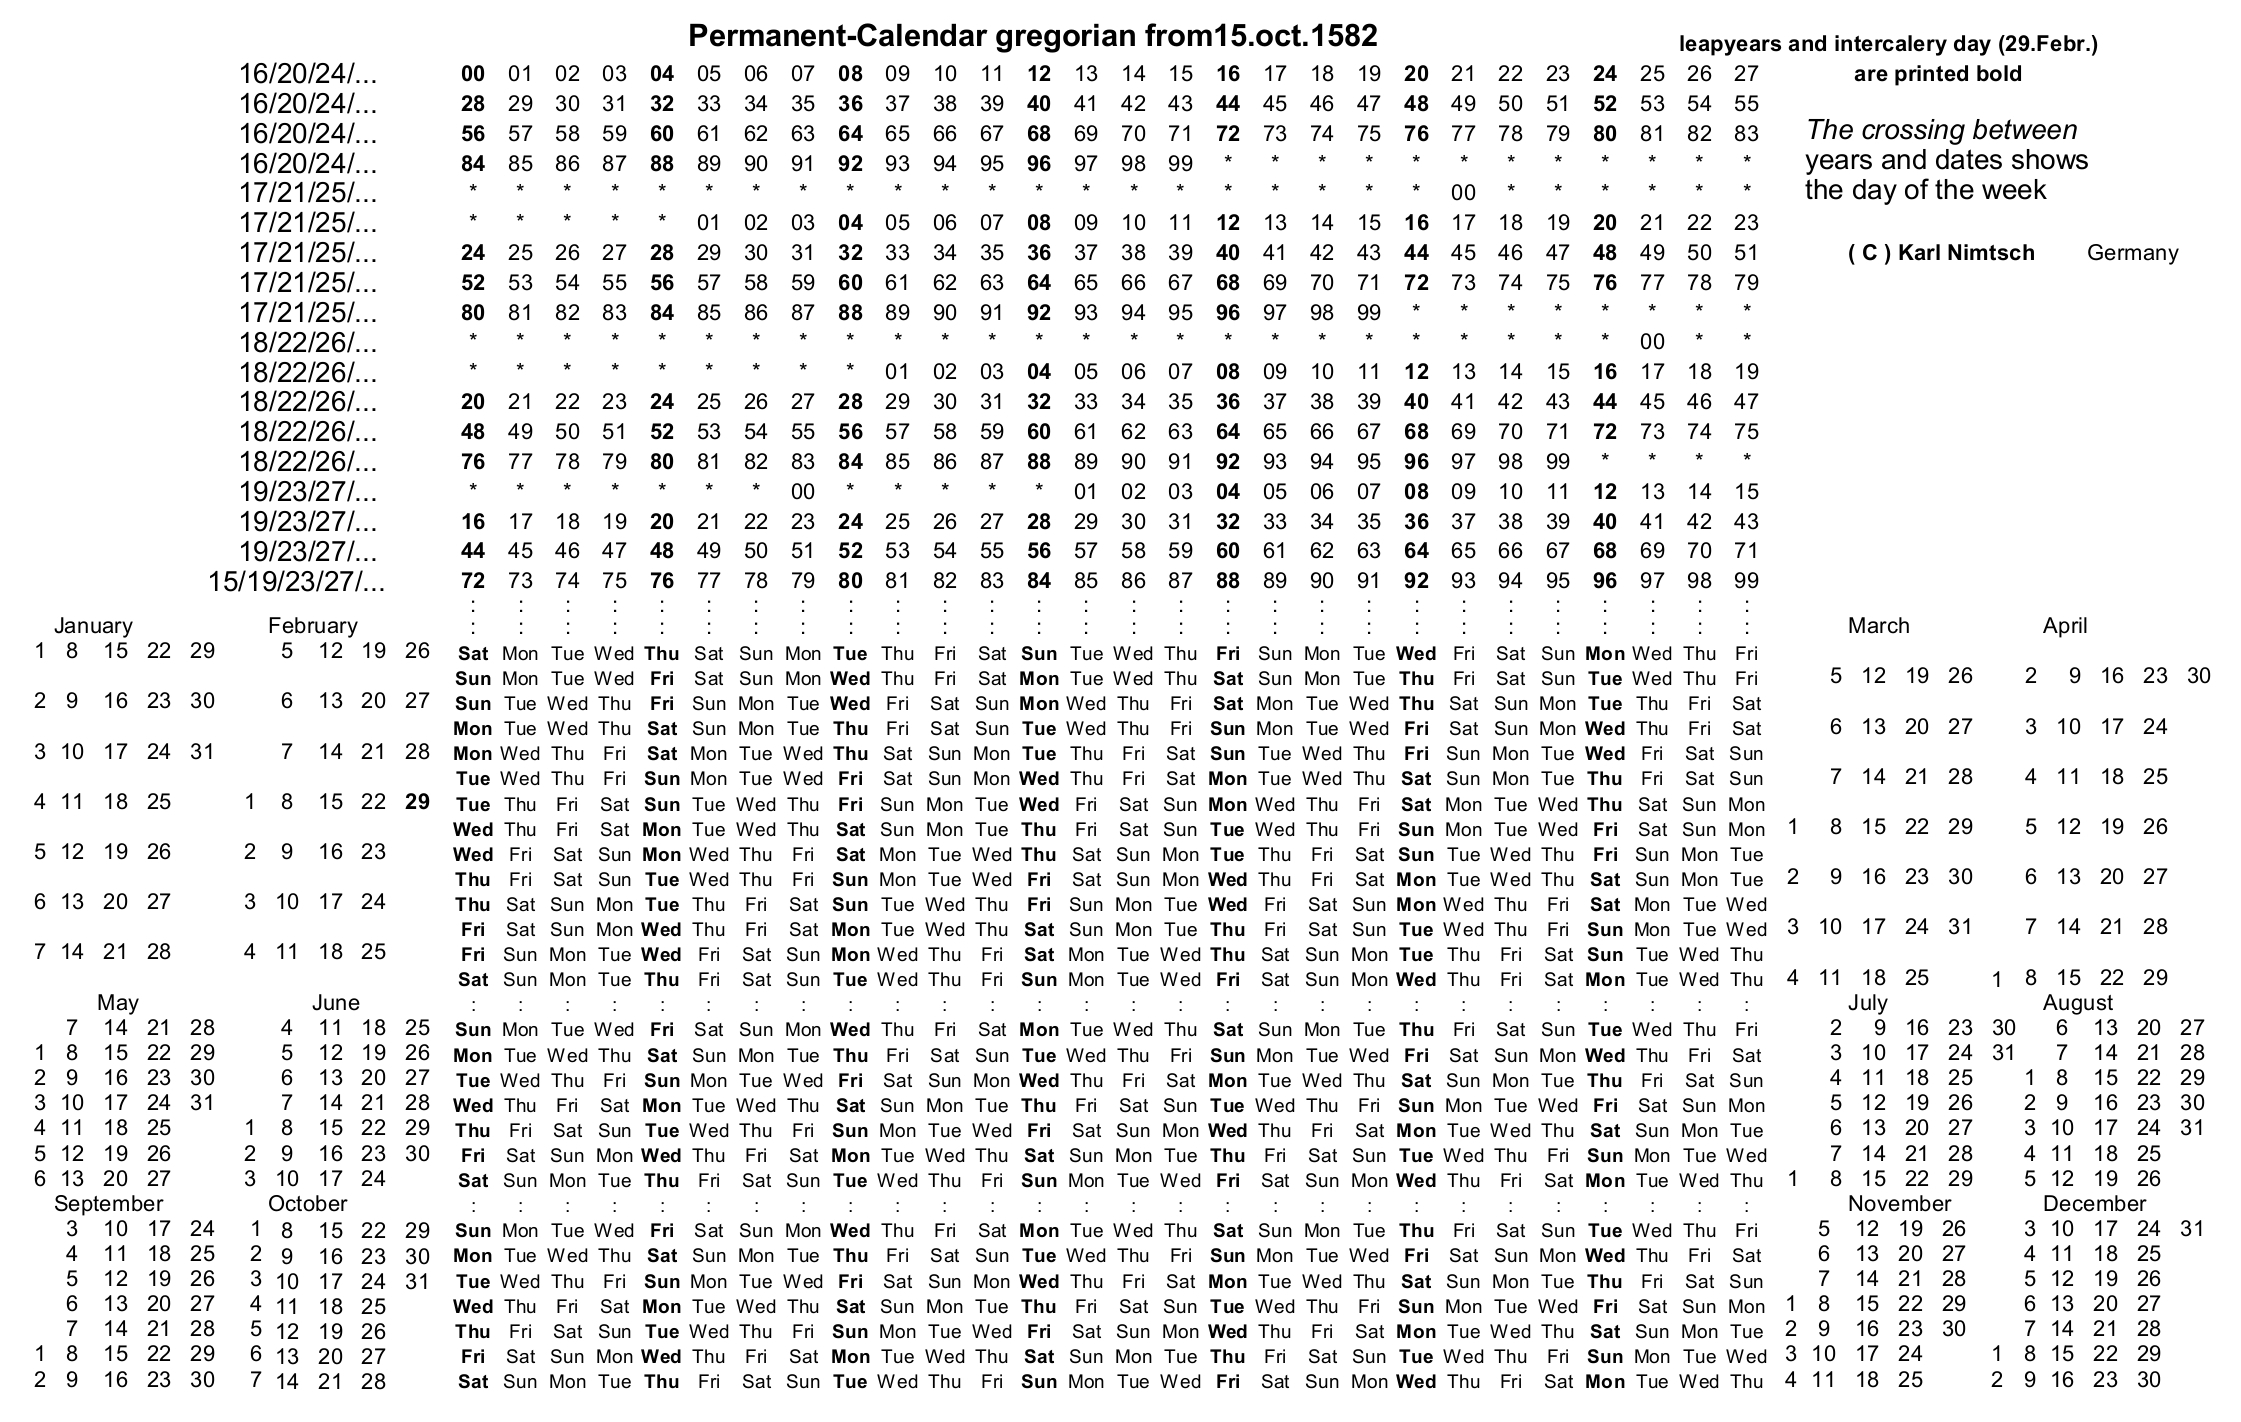 Free Printable Perpetual Julian Calendar - Calendar  Printable Depo-Provera Perpetual Calendar